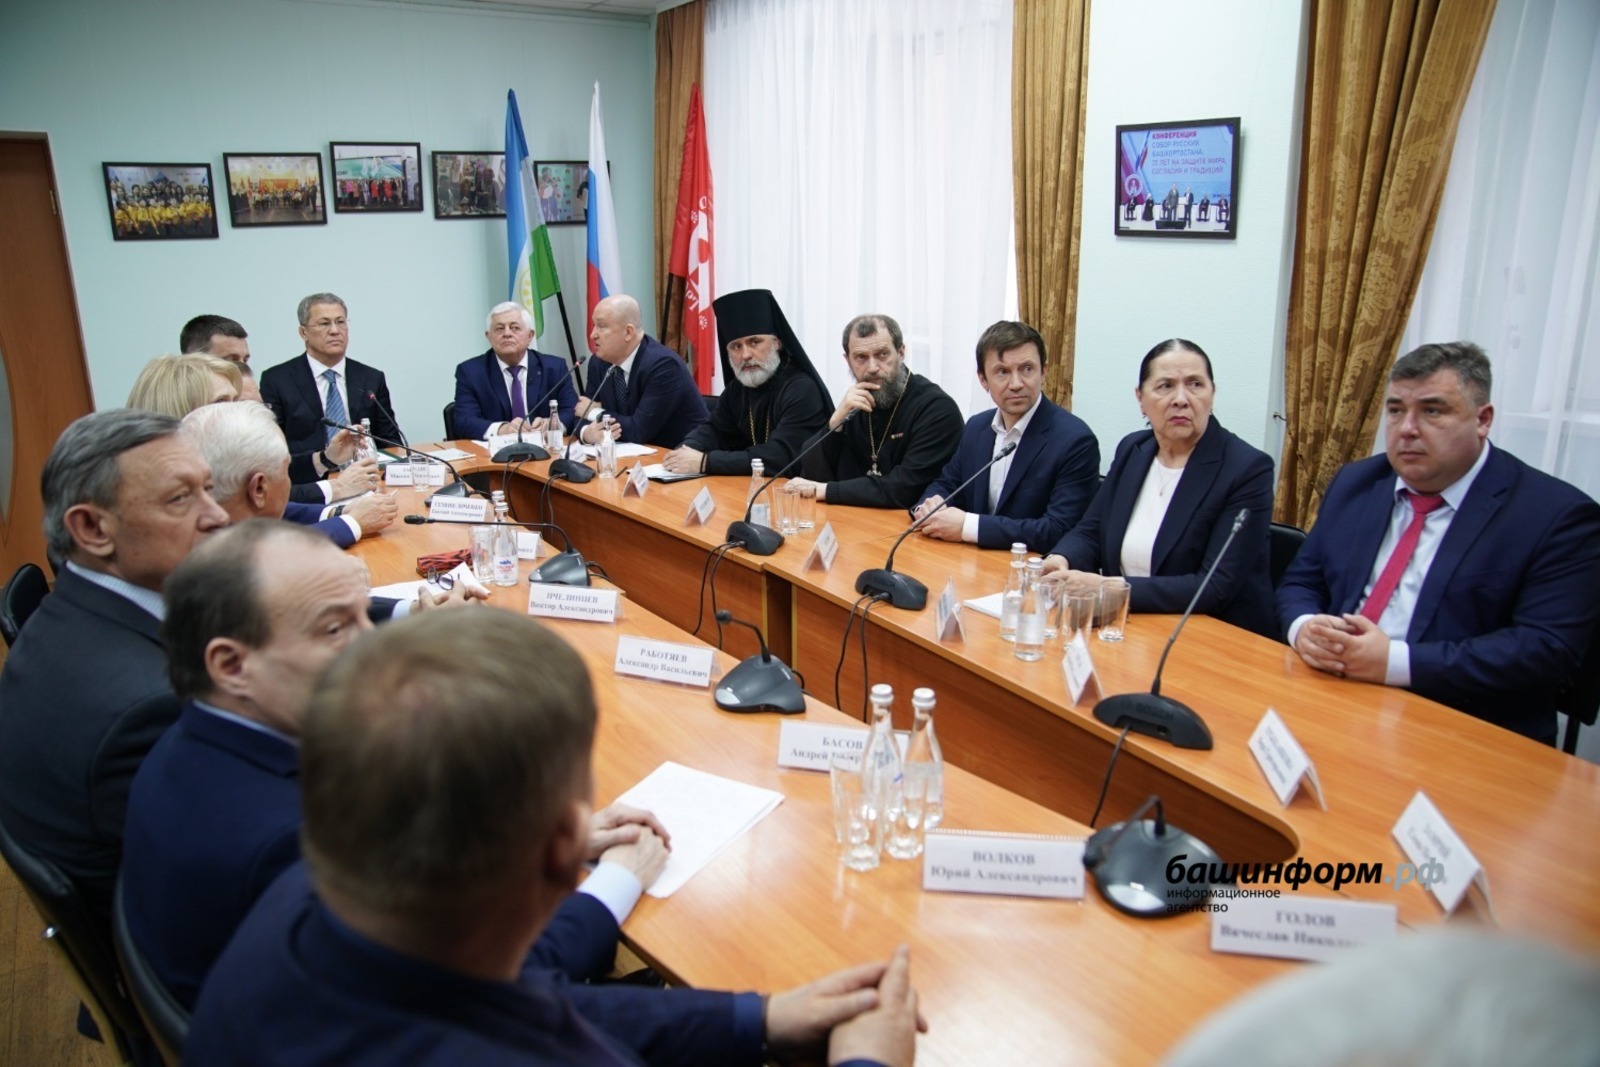 Глава Башкирии Радий Хабиров отметил ценность межнационального единства в республике